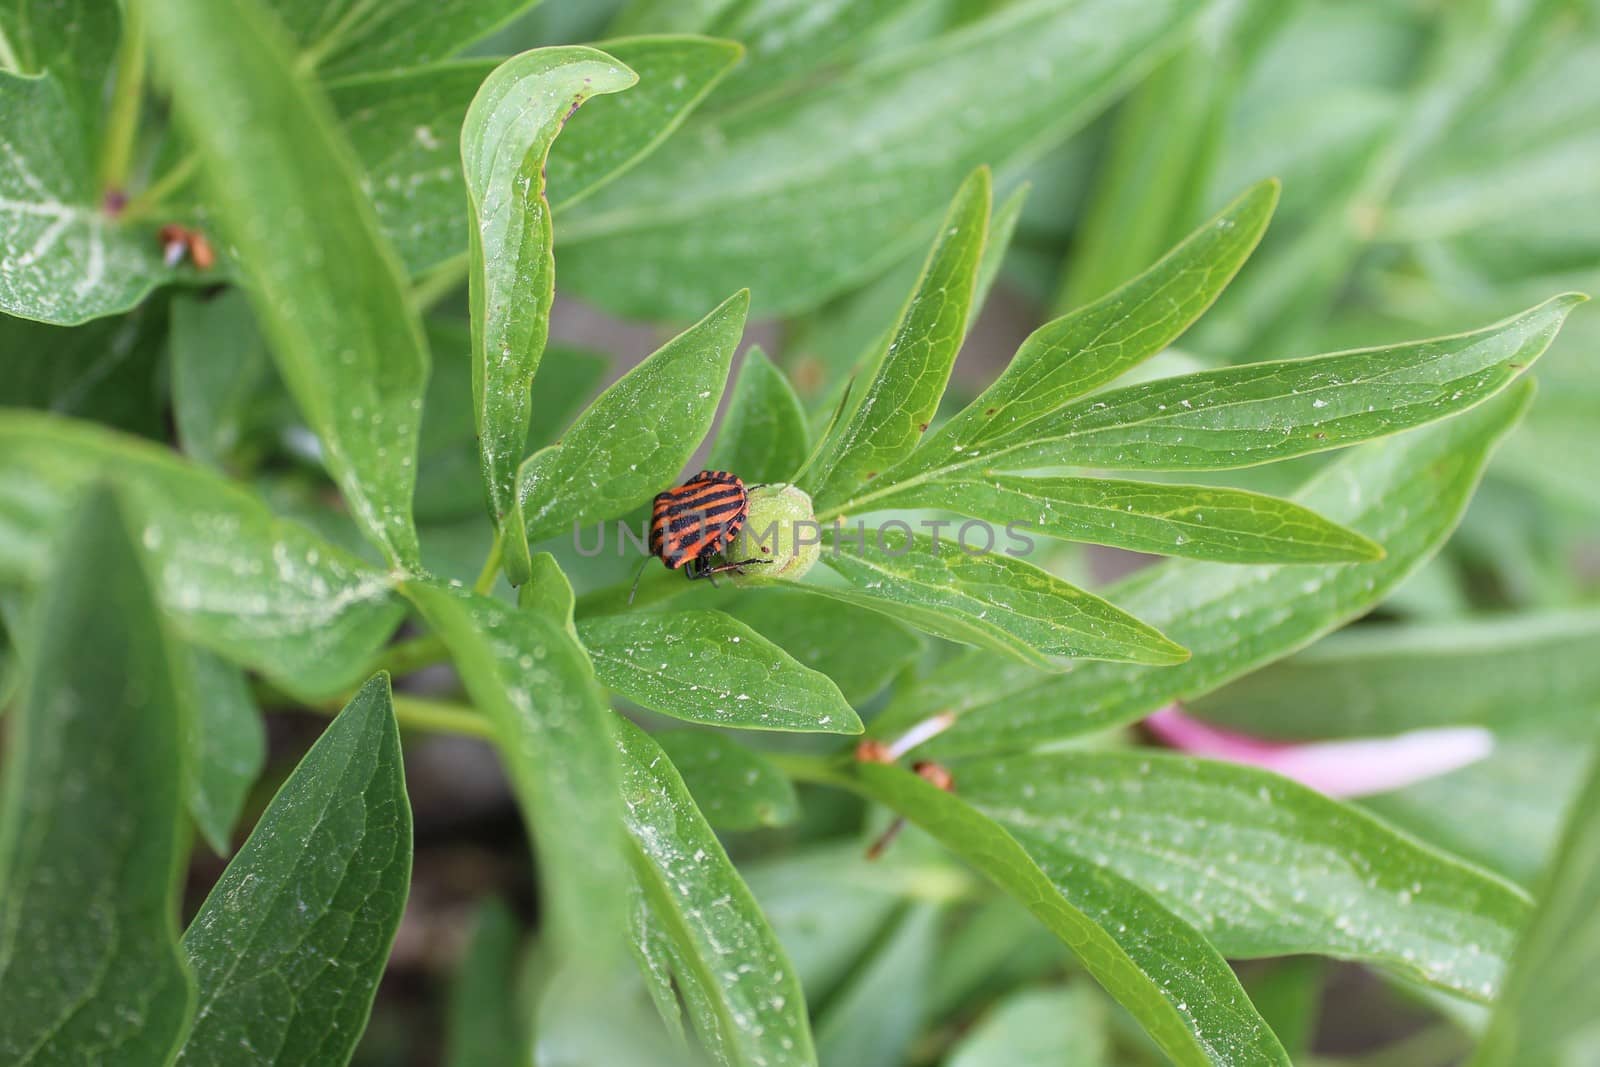 striped shield bug on a peony leaf by martina_unbehauen